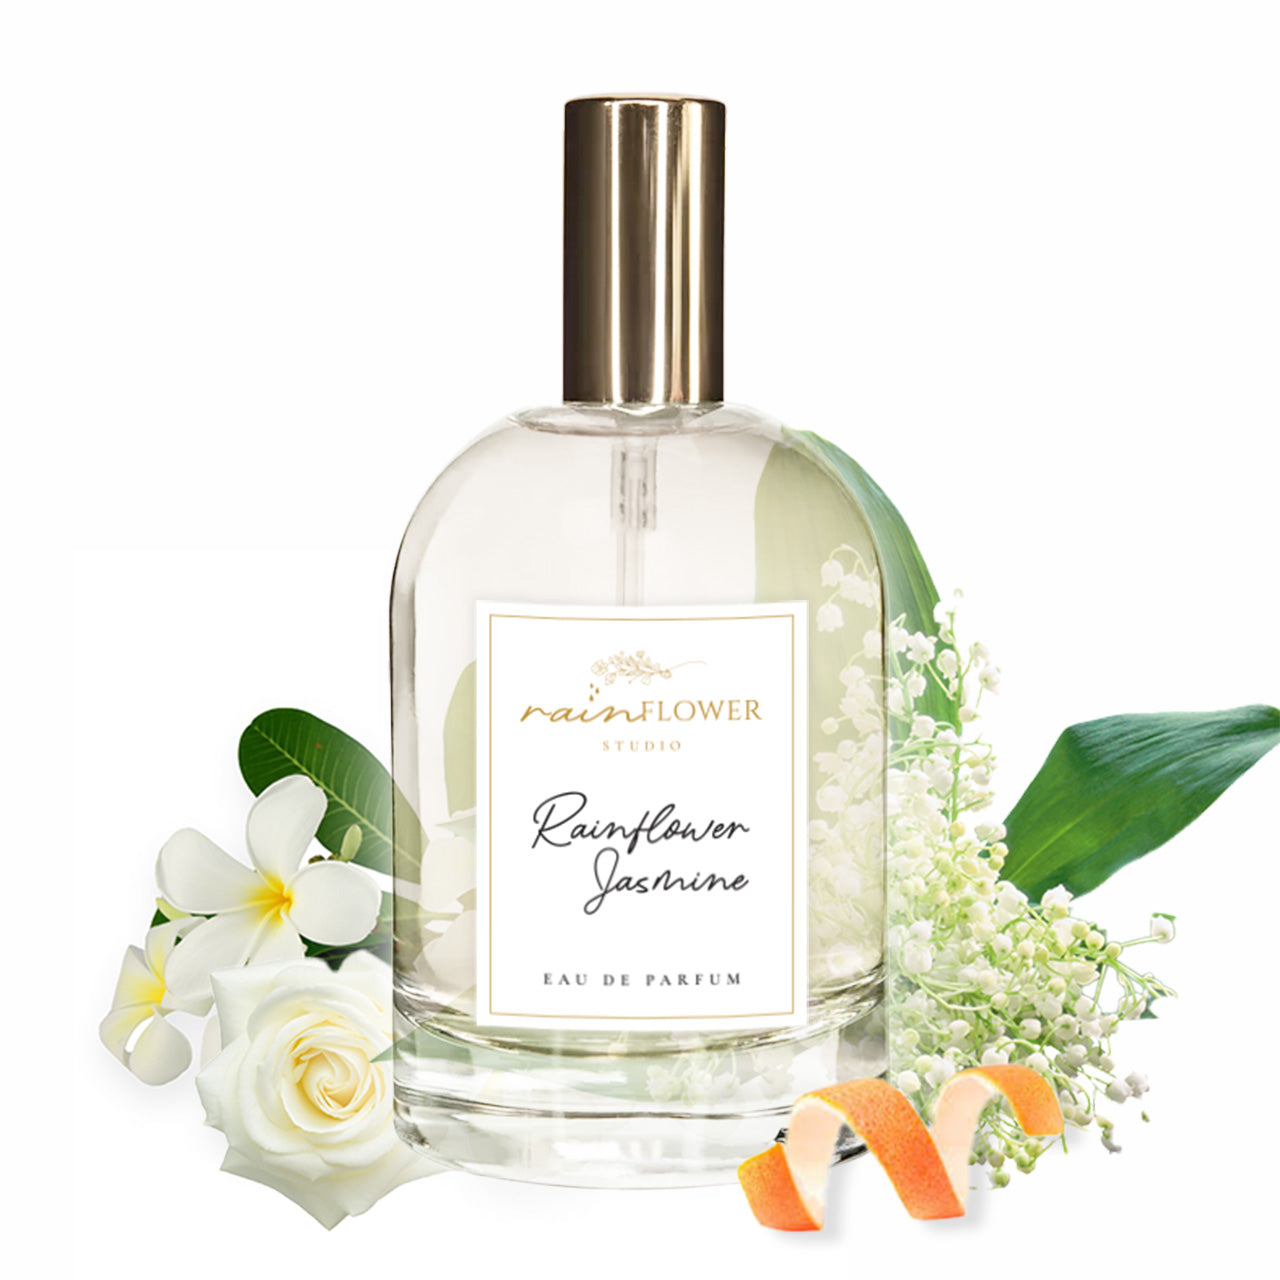 Rainflower Jasmine Perfume - editorial 